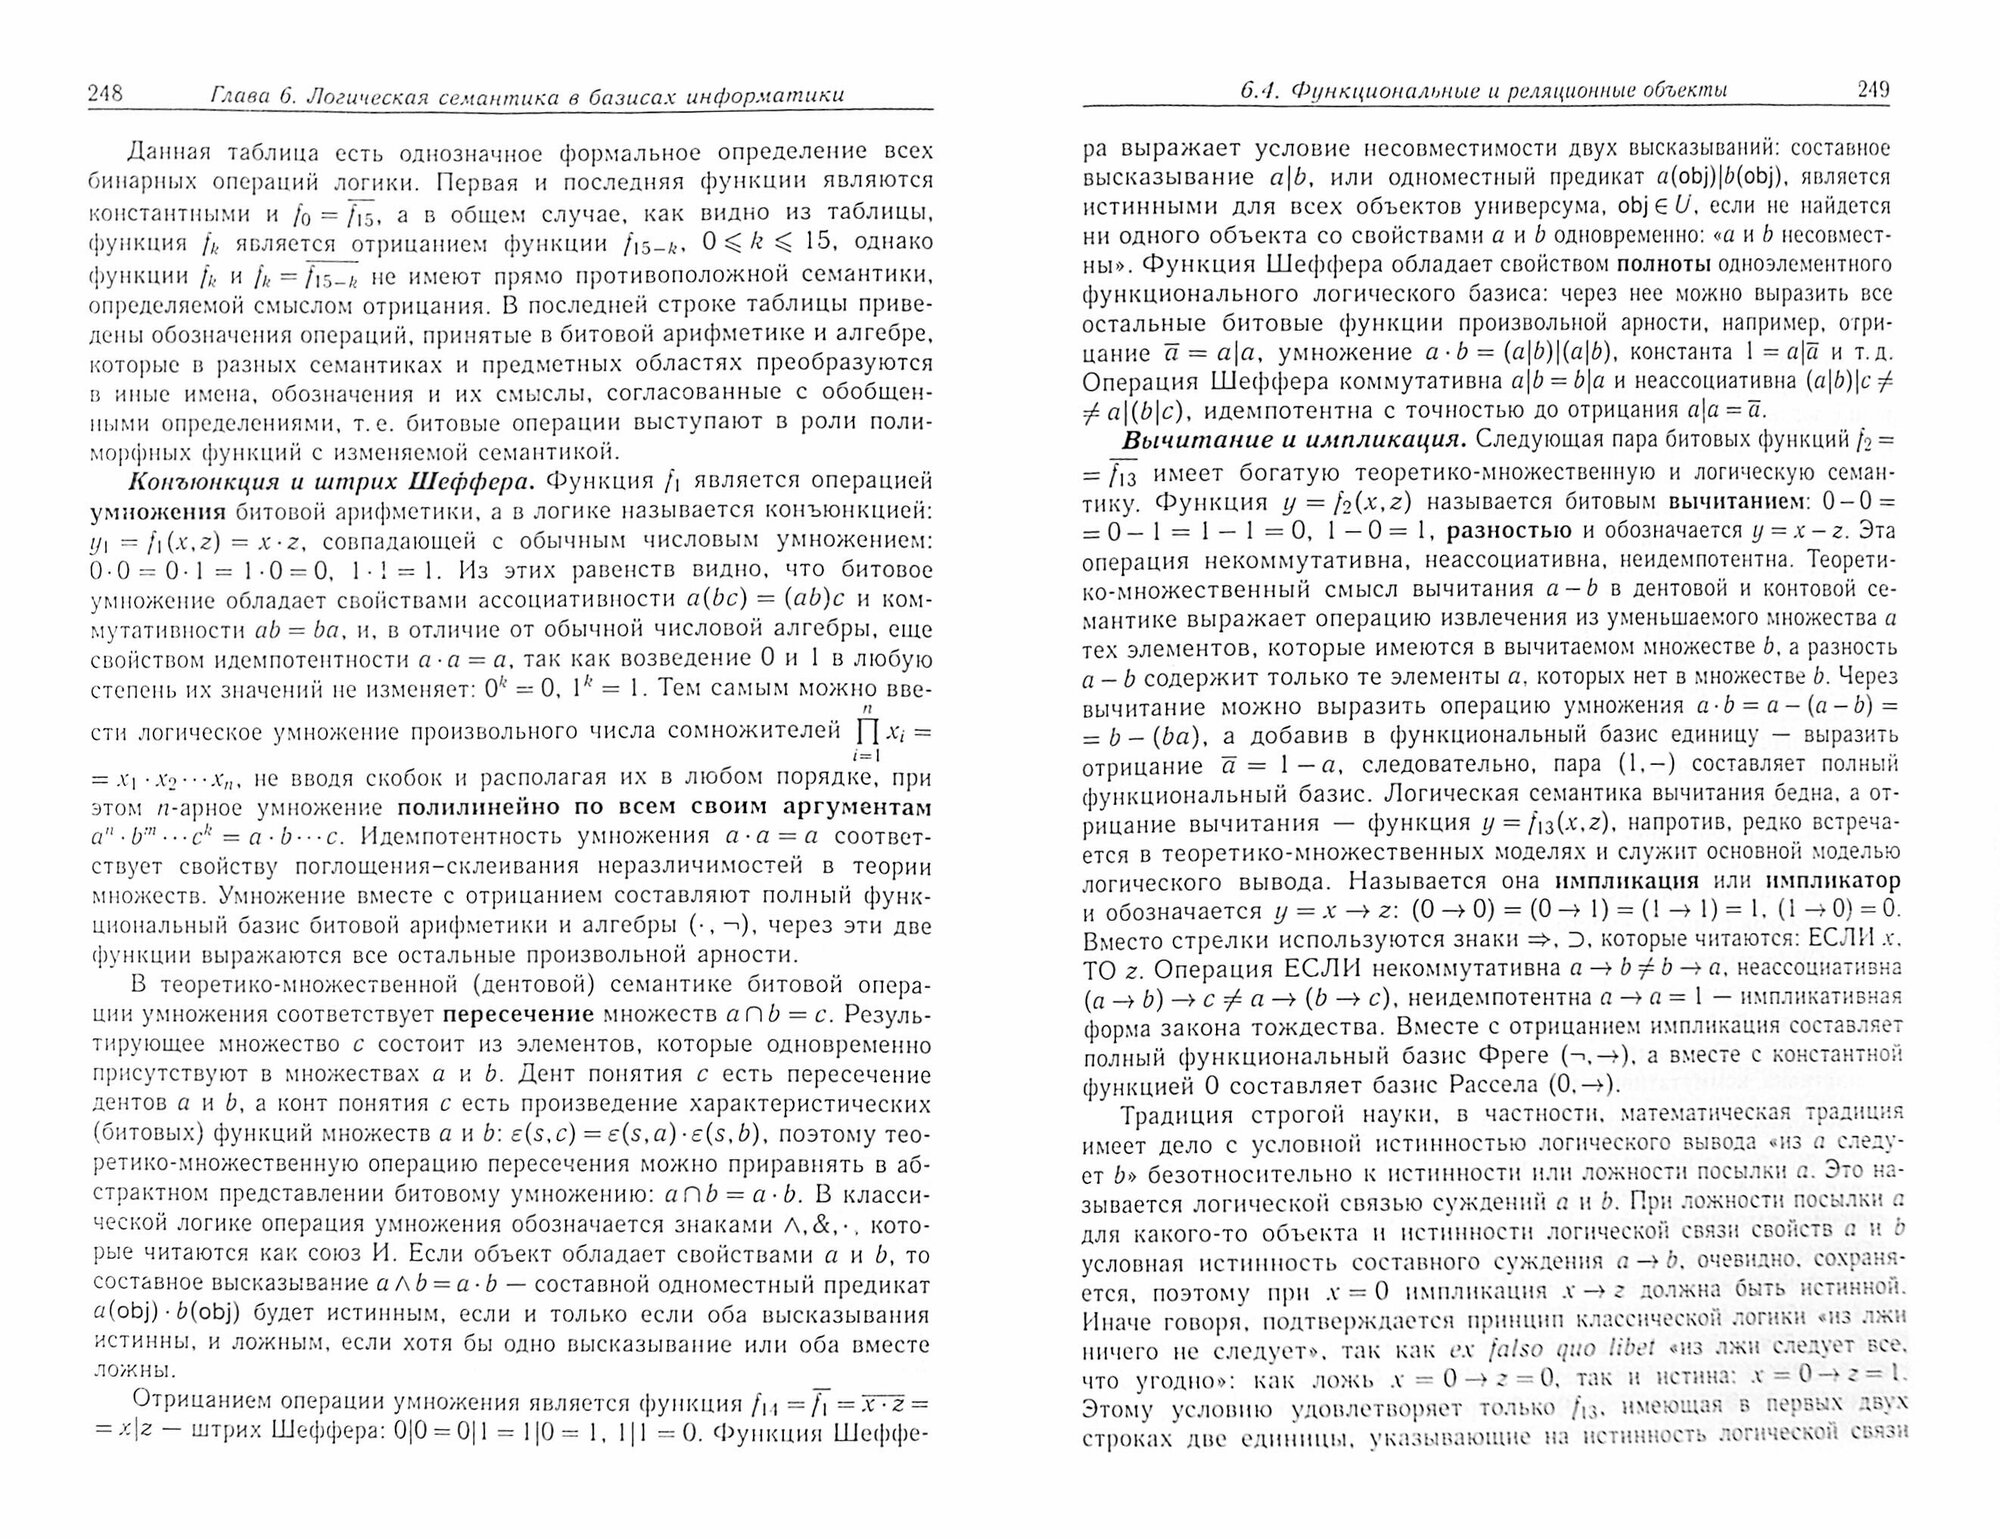 Теоретическая информатика и ее основания. В 2-х томах. Том 1 - фото №3